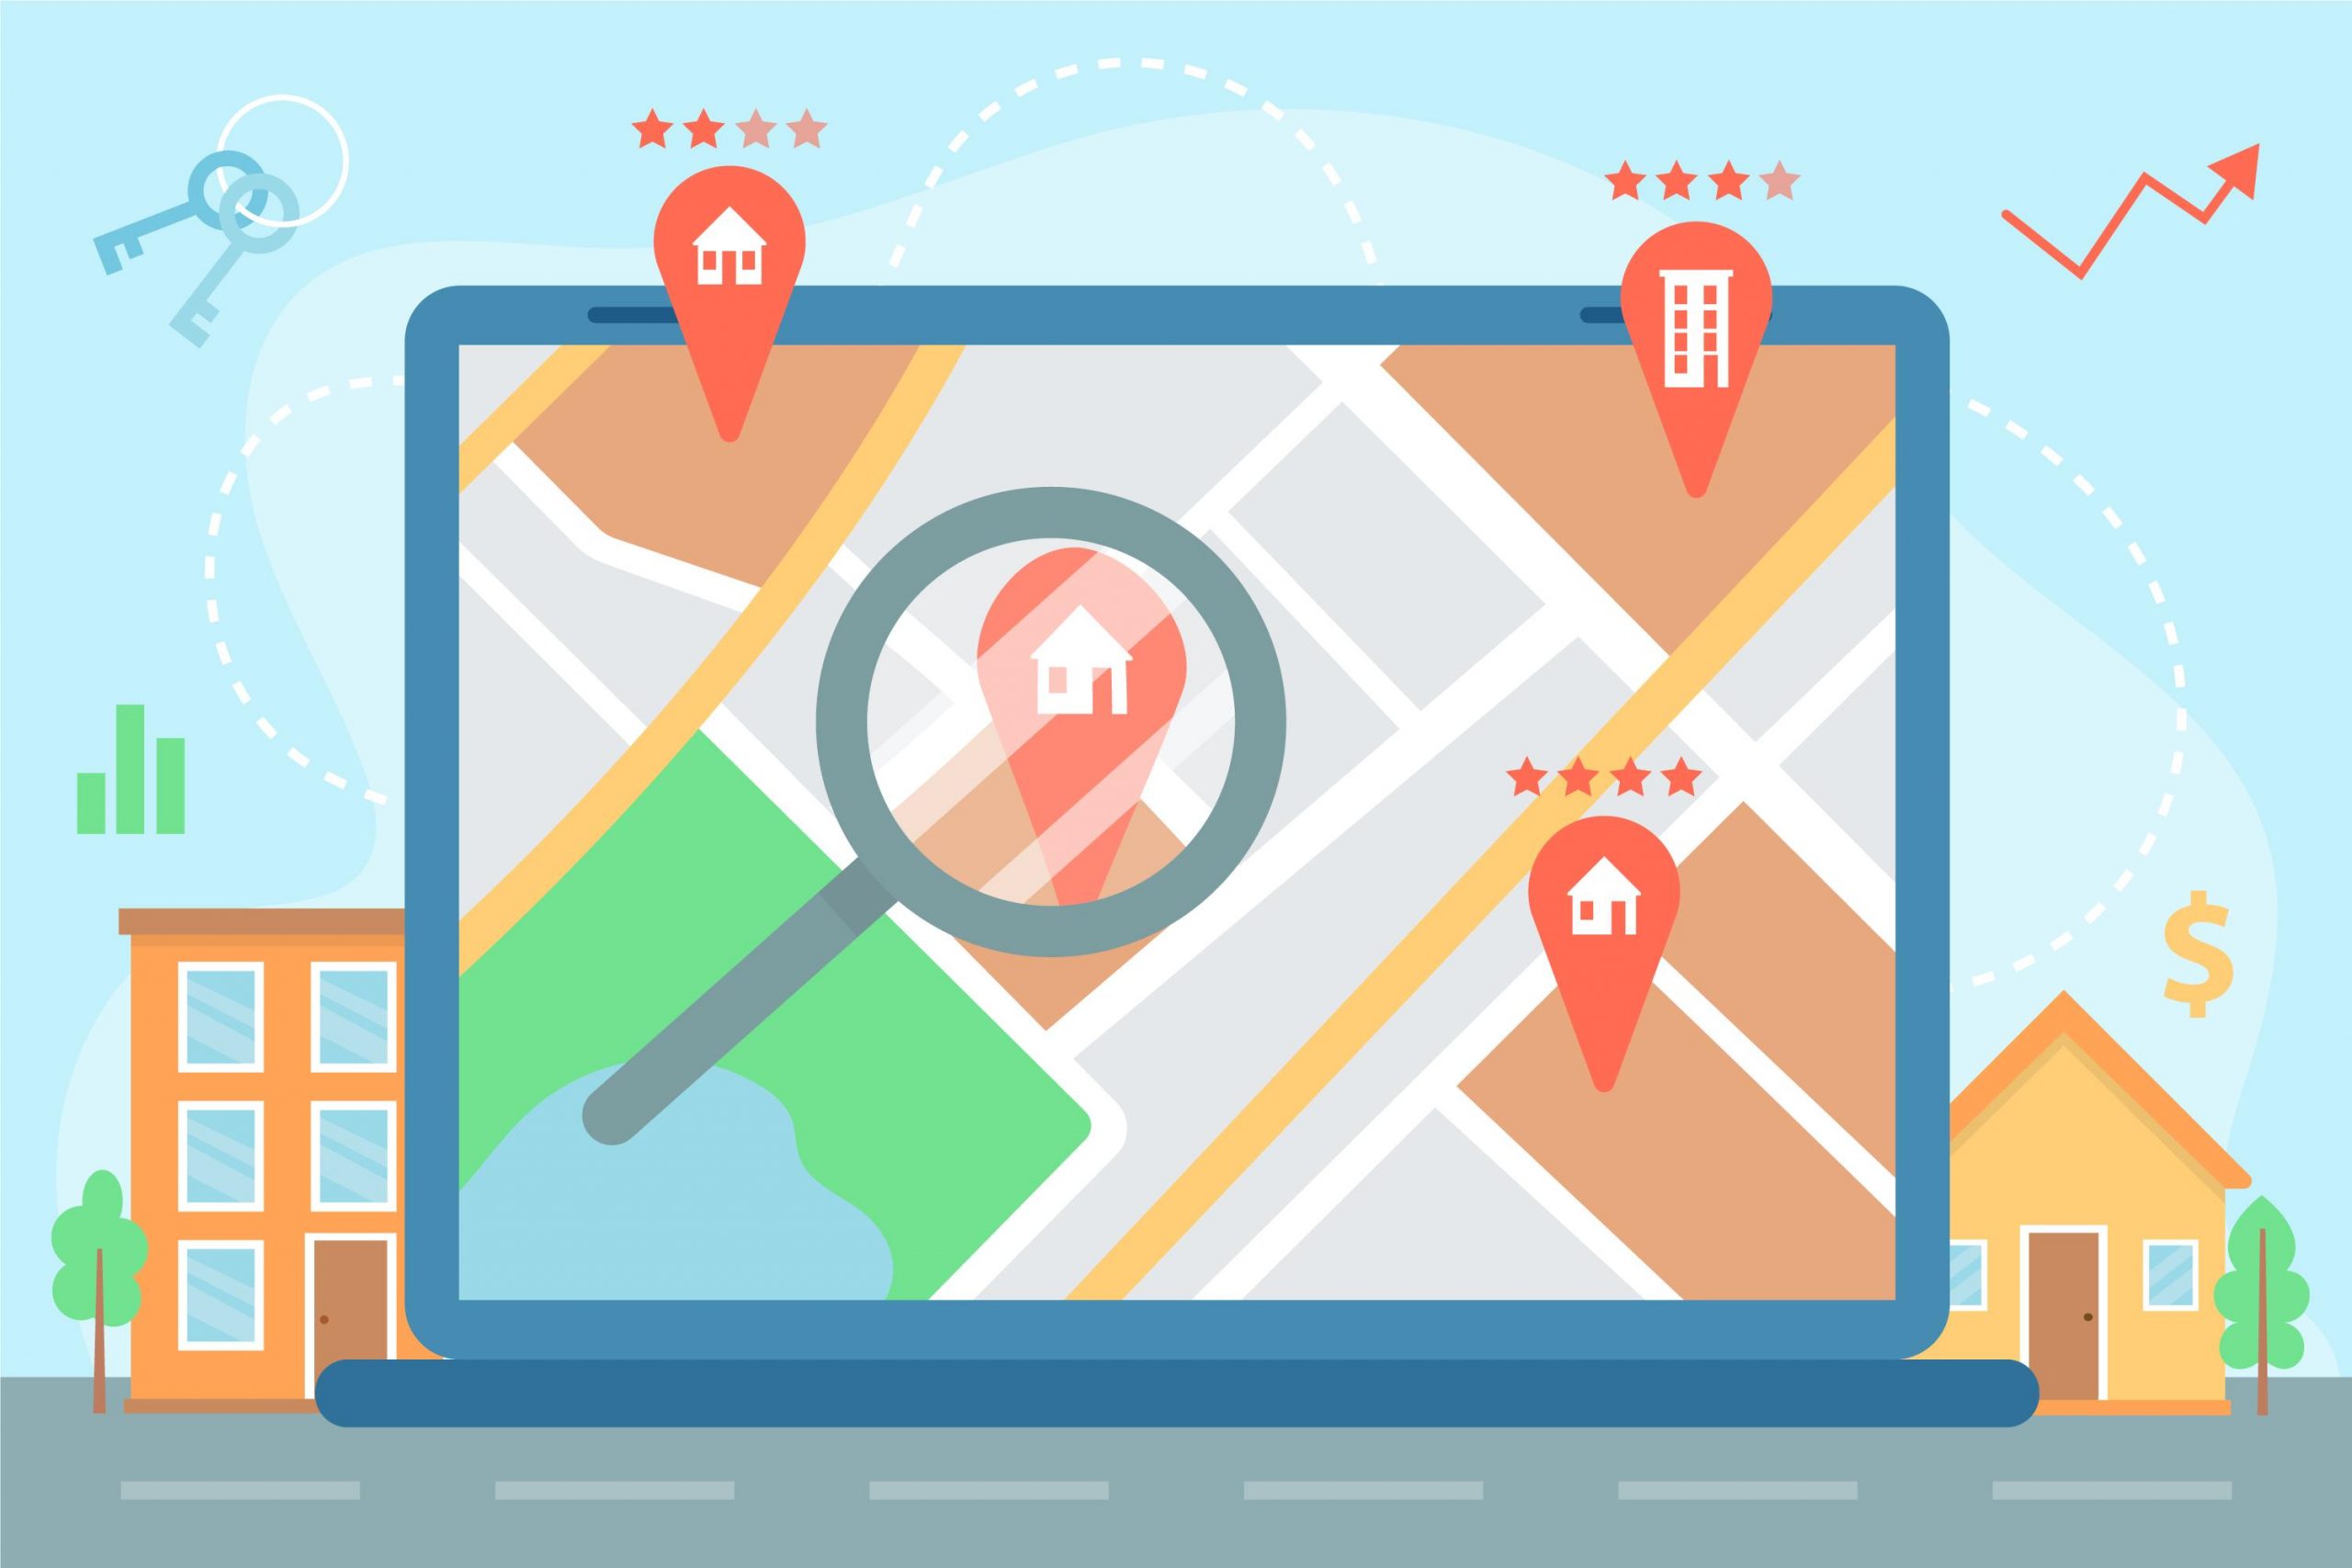 Los negocios aparecen en el mapa gracias al perfil de empresa de Google My Business